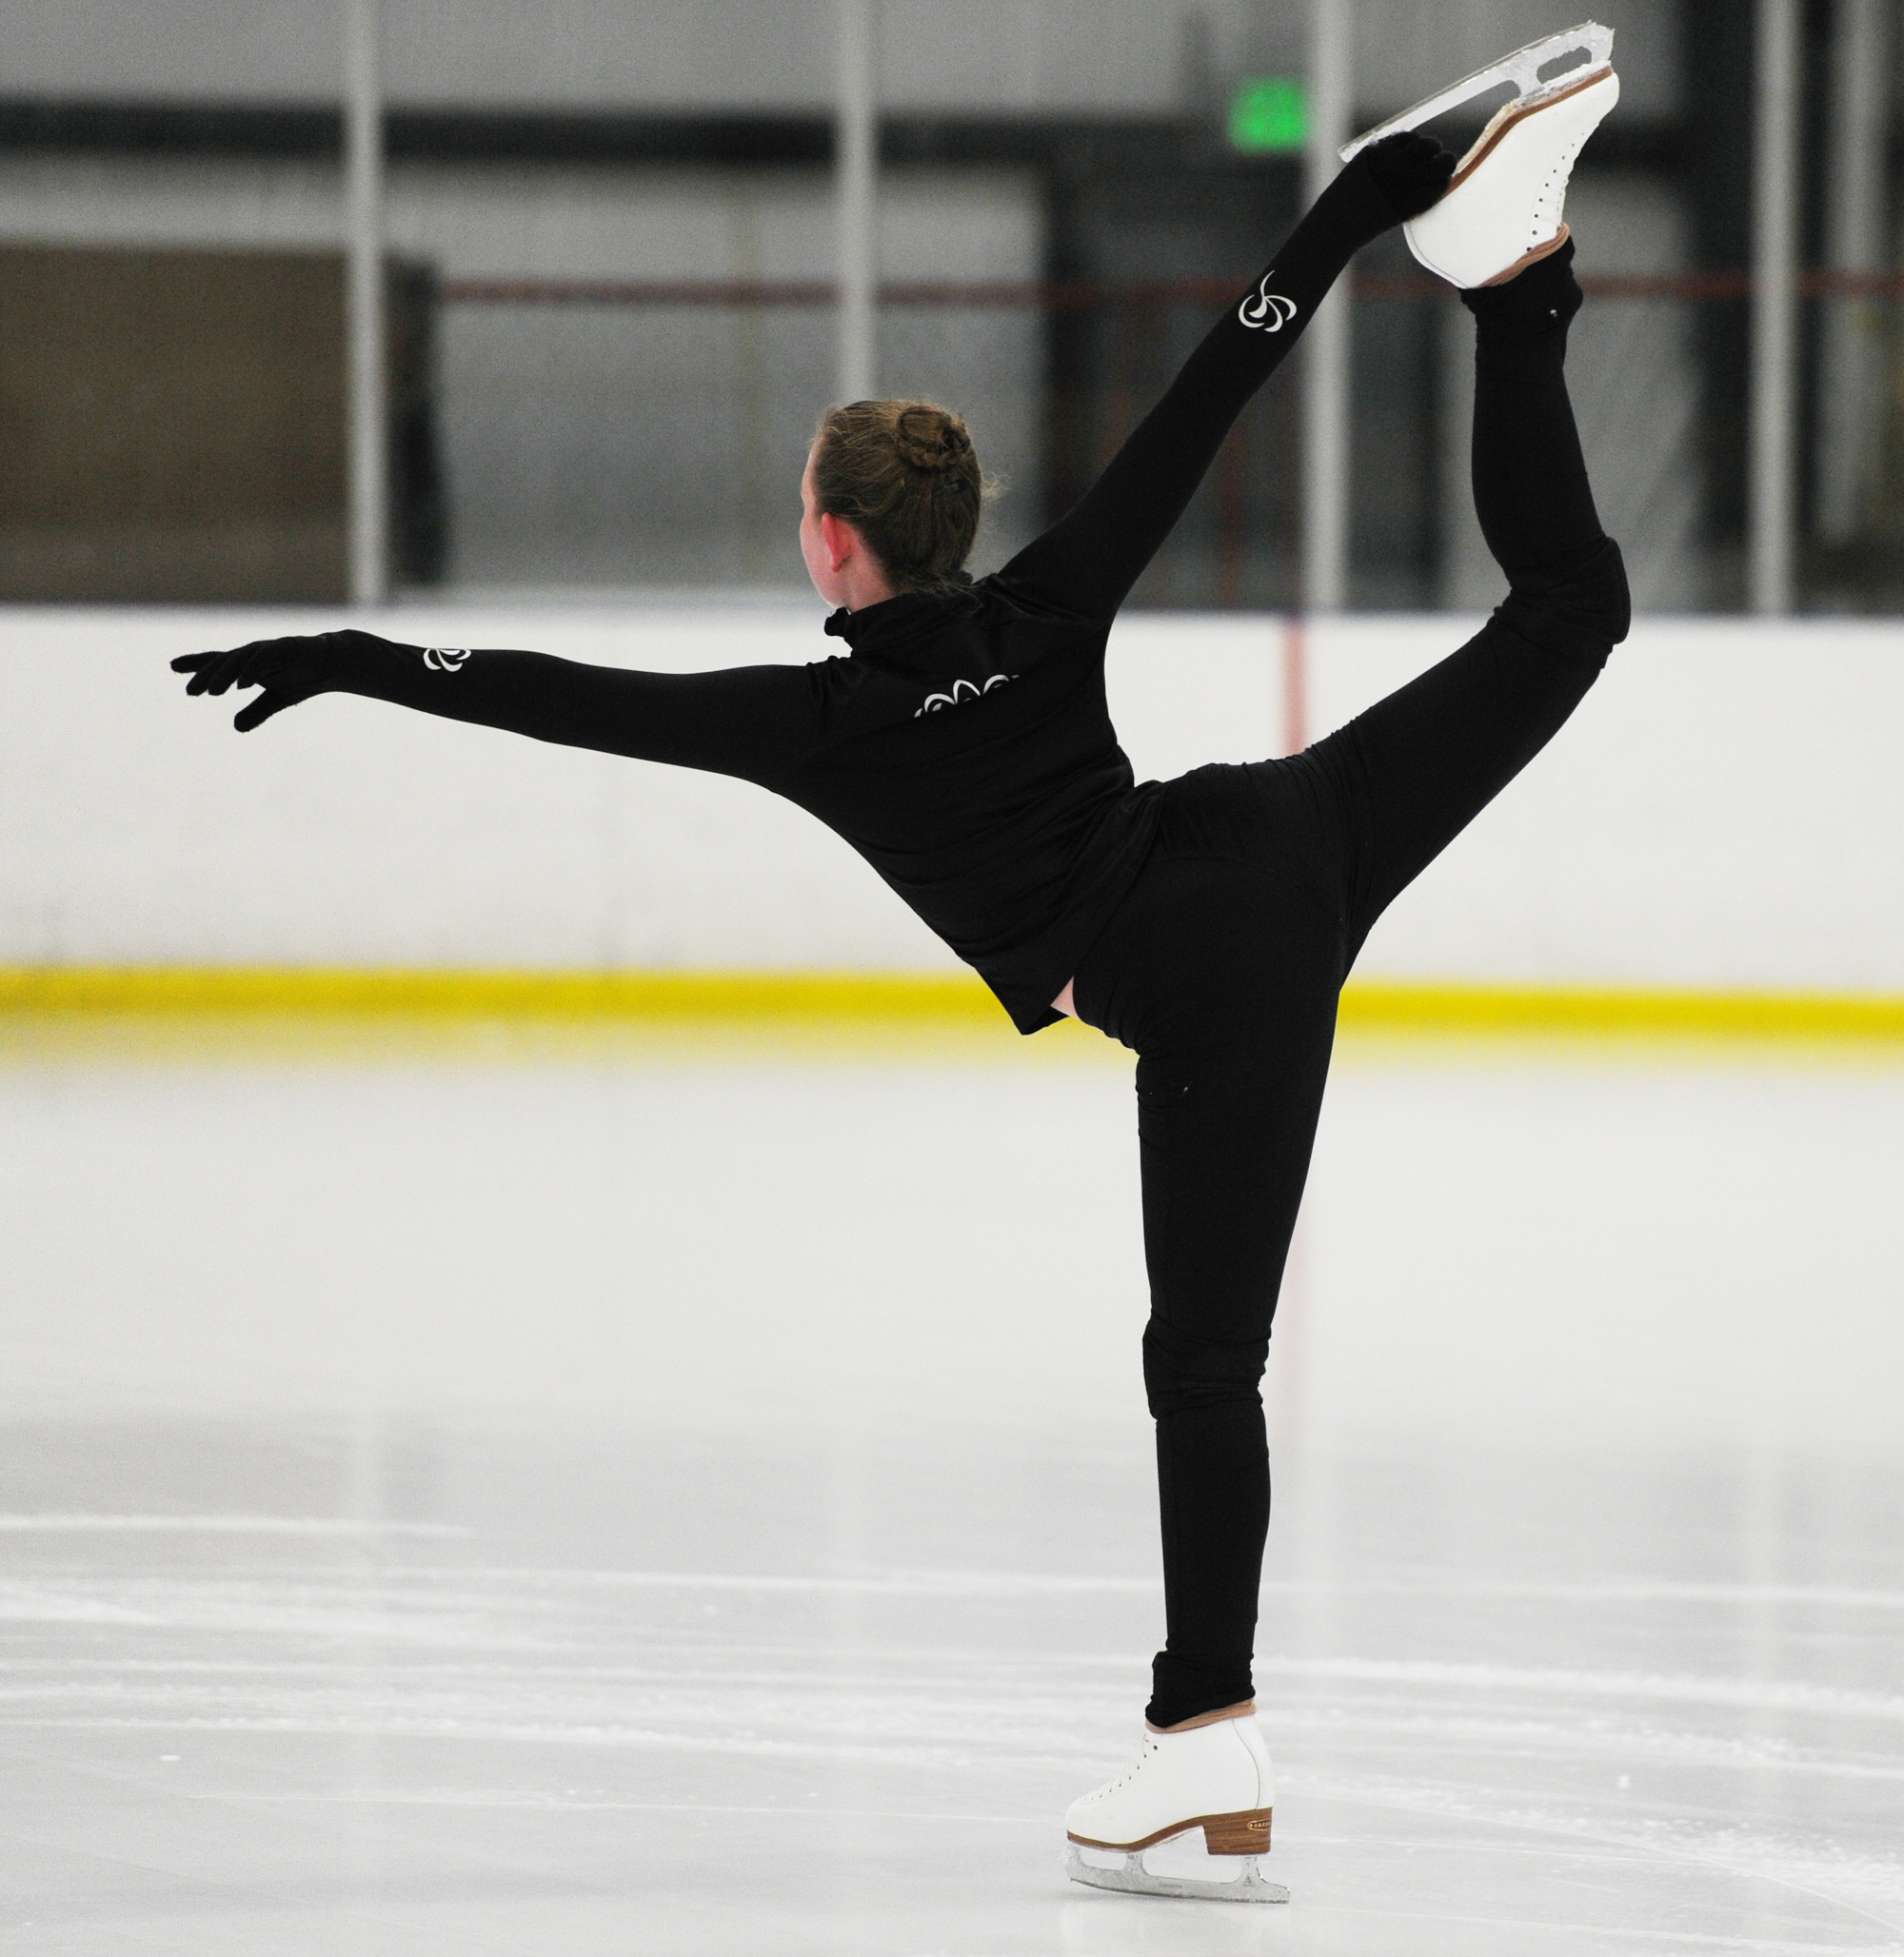 fond d'écran figure,patinage artistique,des sports,patinage sur glace,patinage artistique,danse sur glace